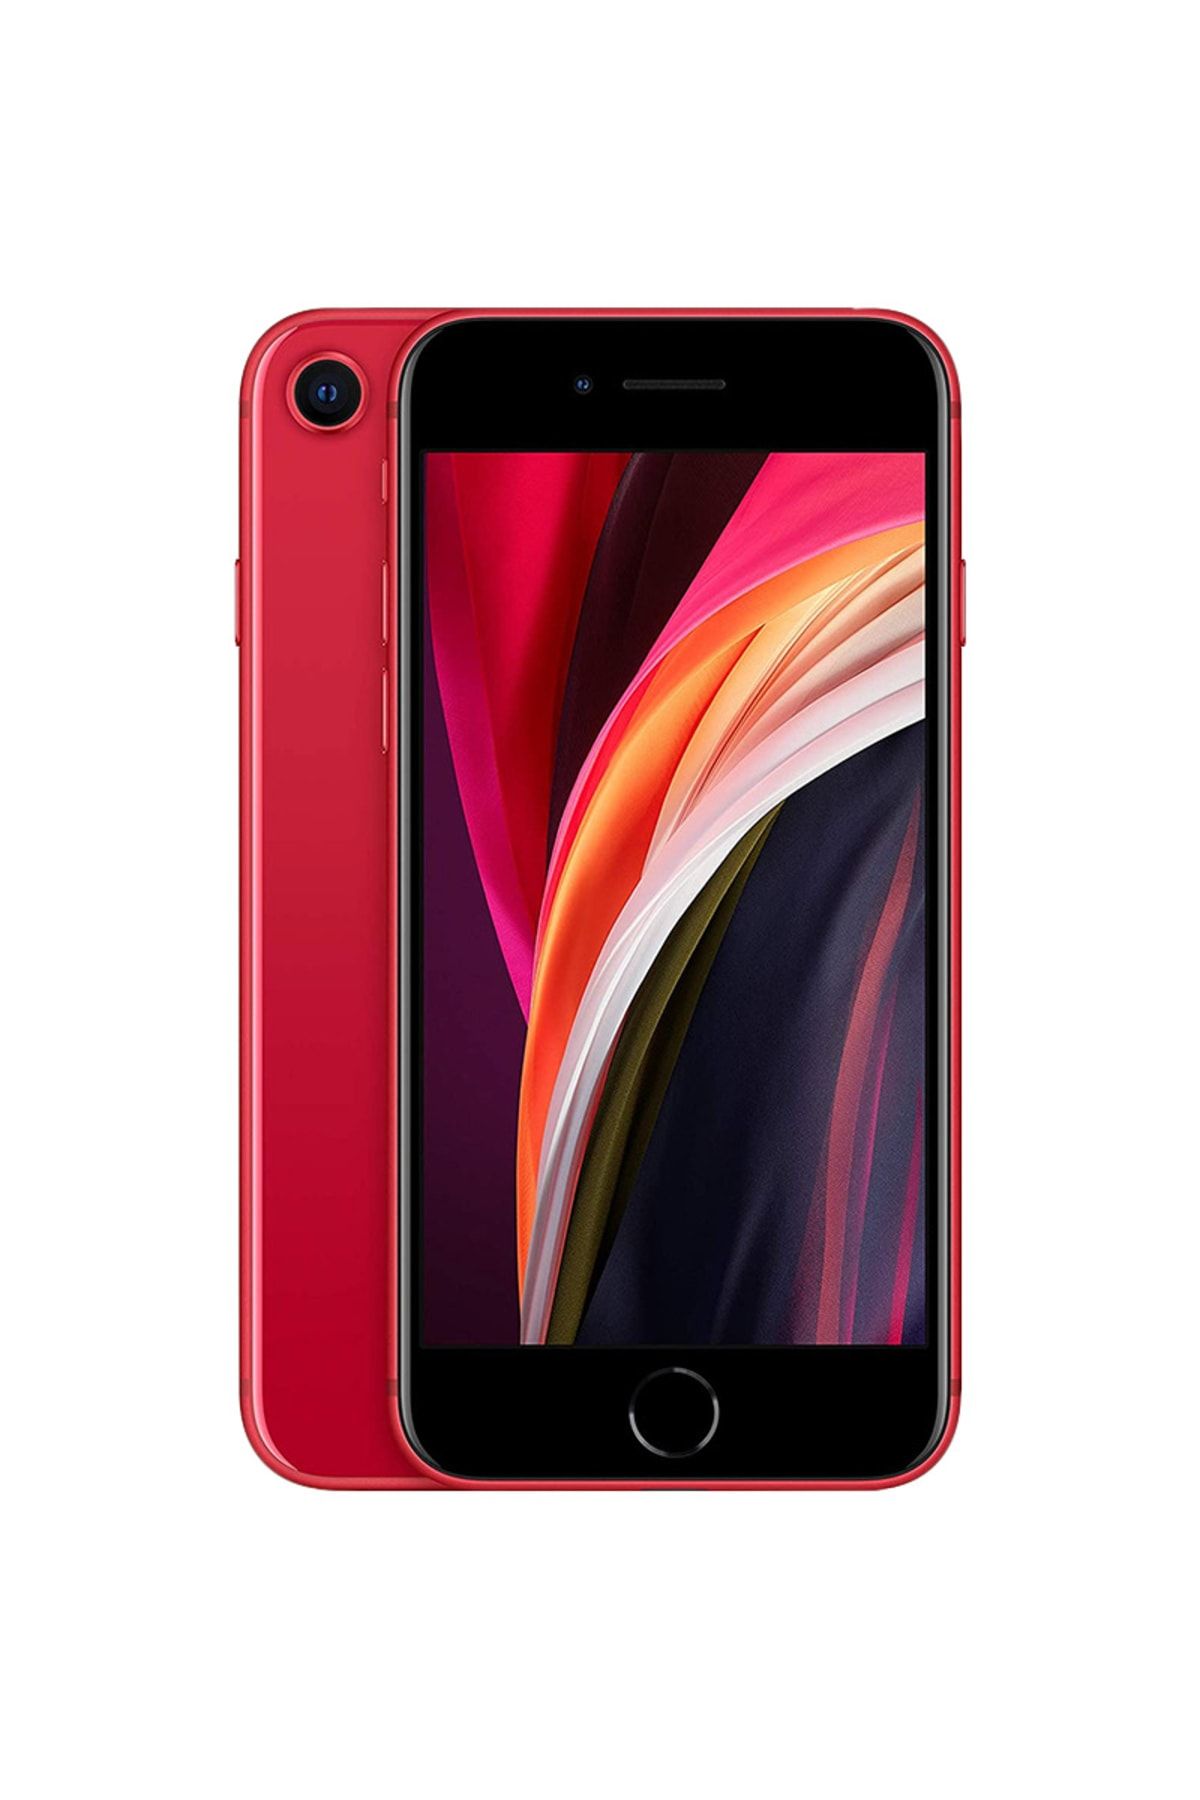 Apple Yenilenmiş iPhone Se 2020 64 GB Kırmızı Cep Telefonu (12 Ay Garantili) - A Kalite